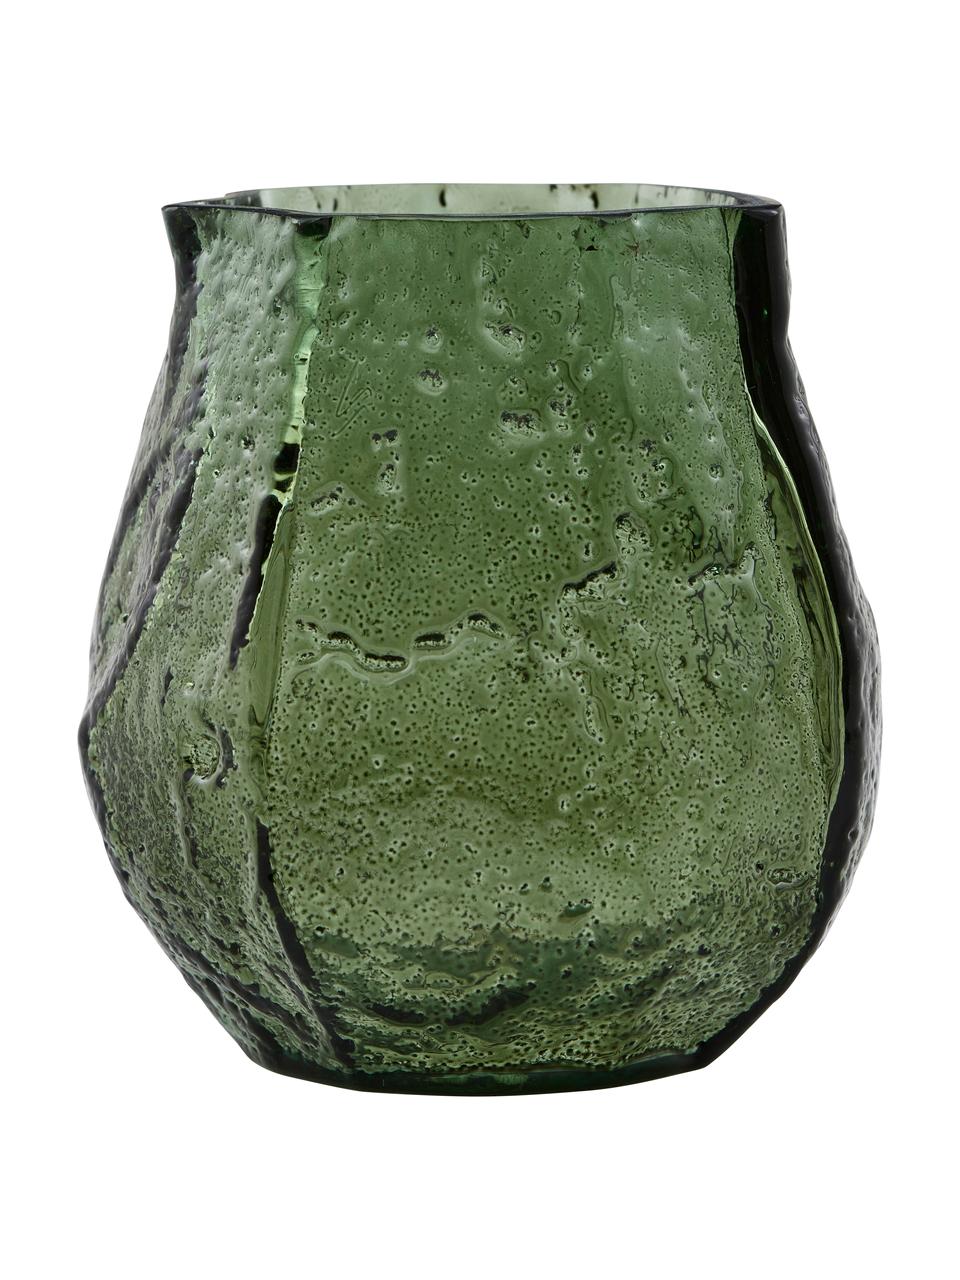 Kleine Glas-Vase Moun in Grün, Glas, Grün, Ø 9 x H 10 cm